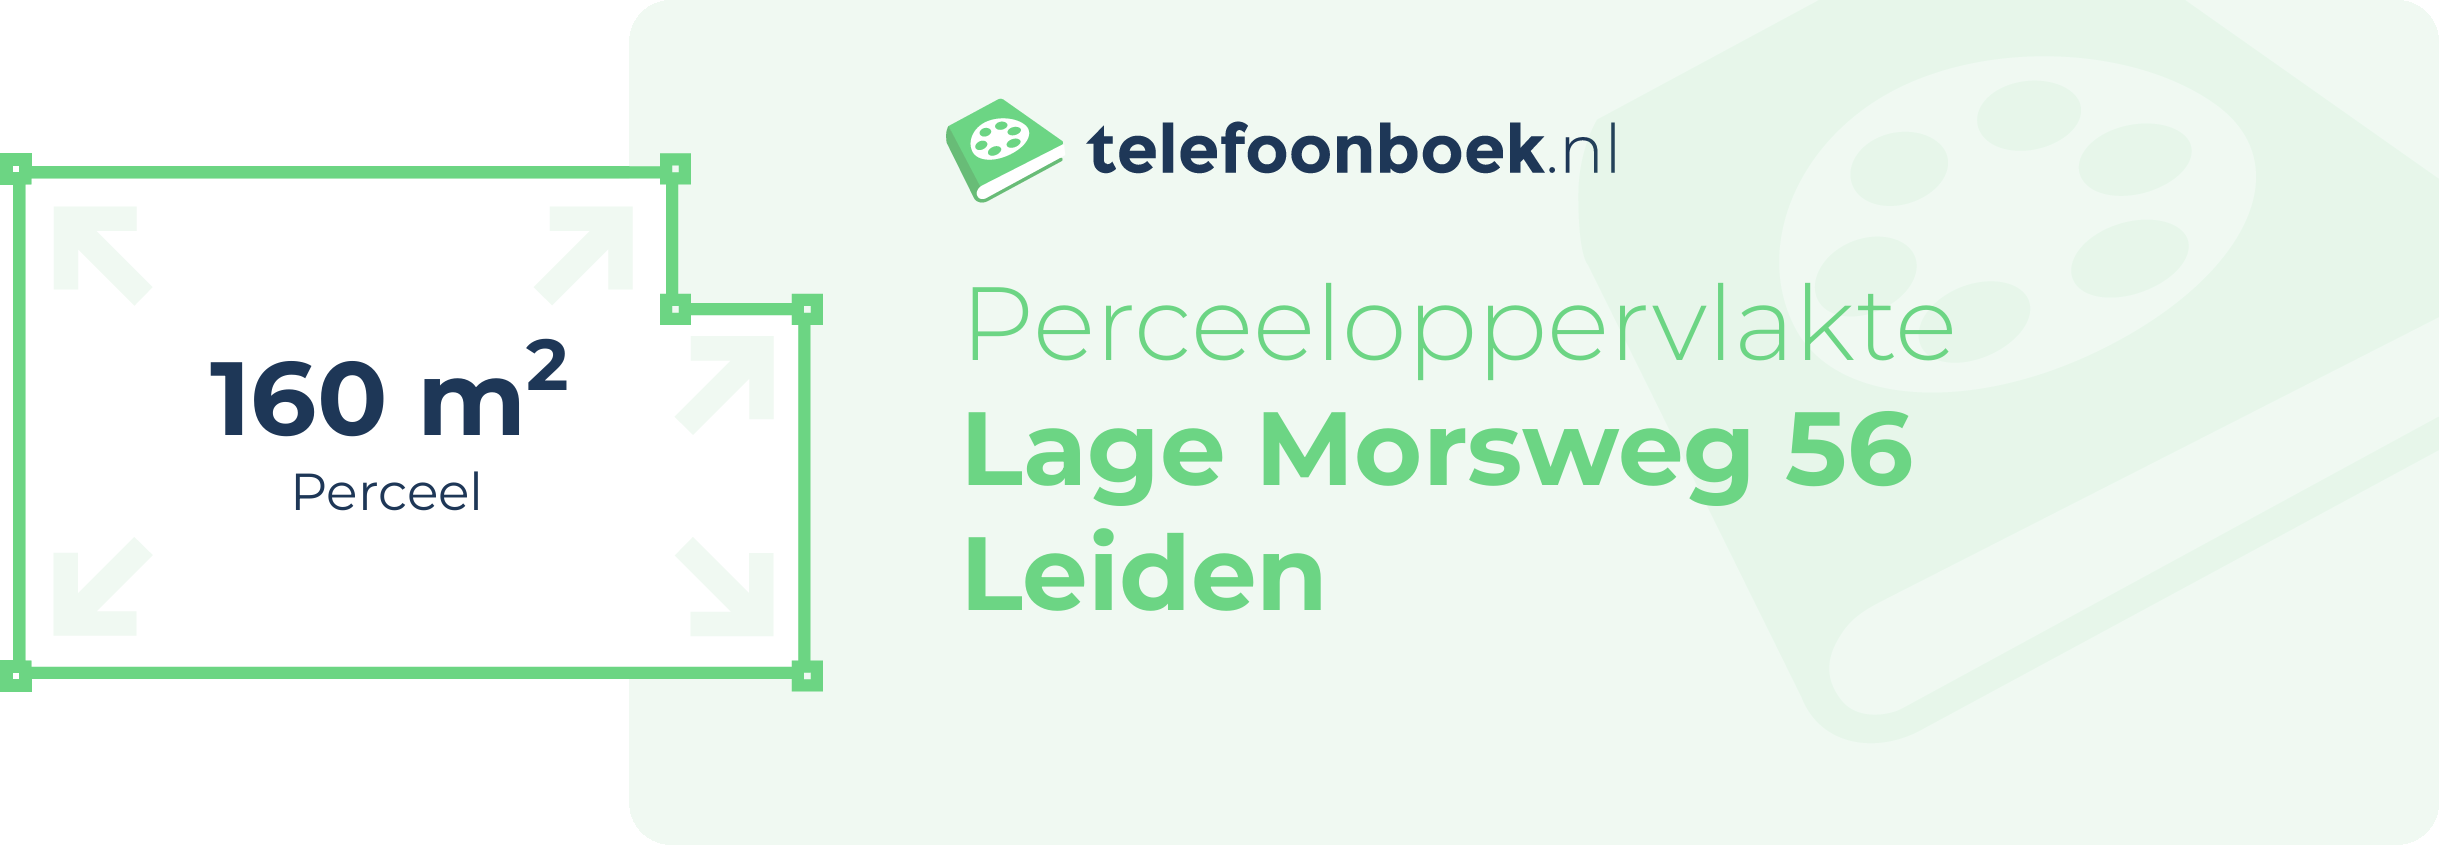 Perceeloppervlakte Lage Morsweg 56 Leiden